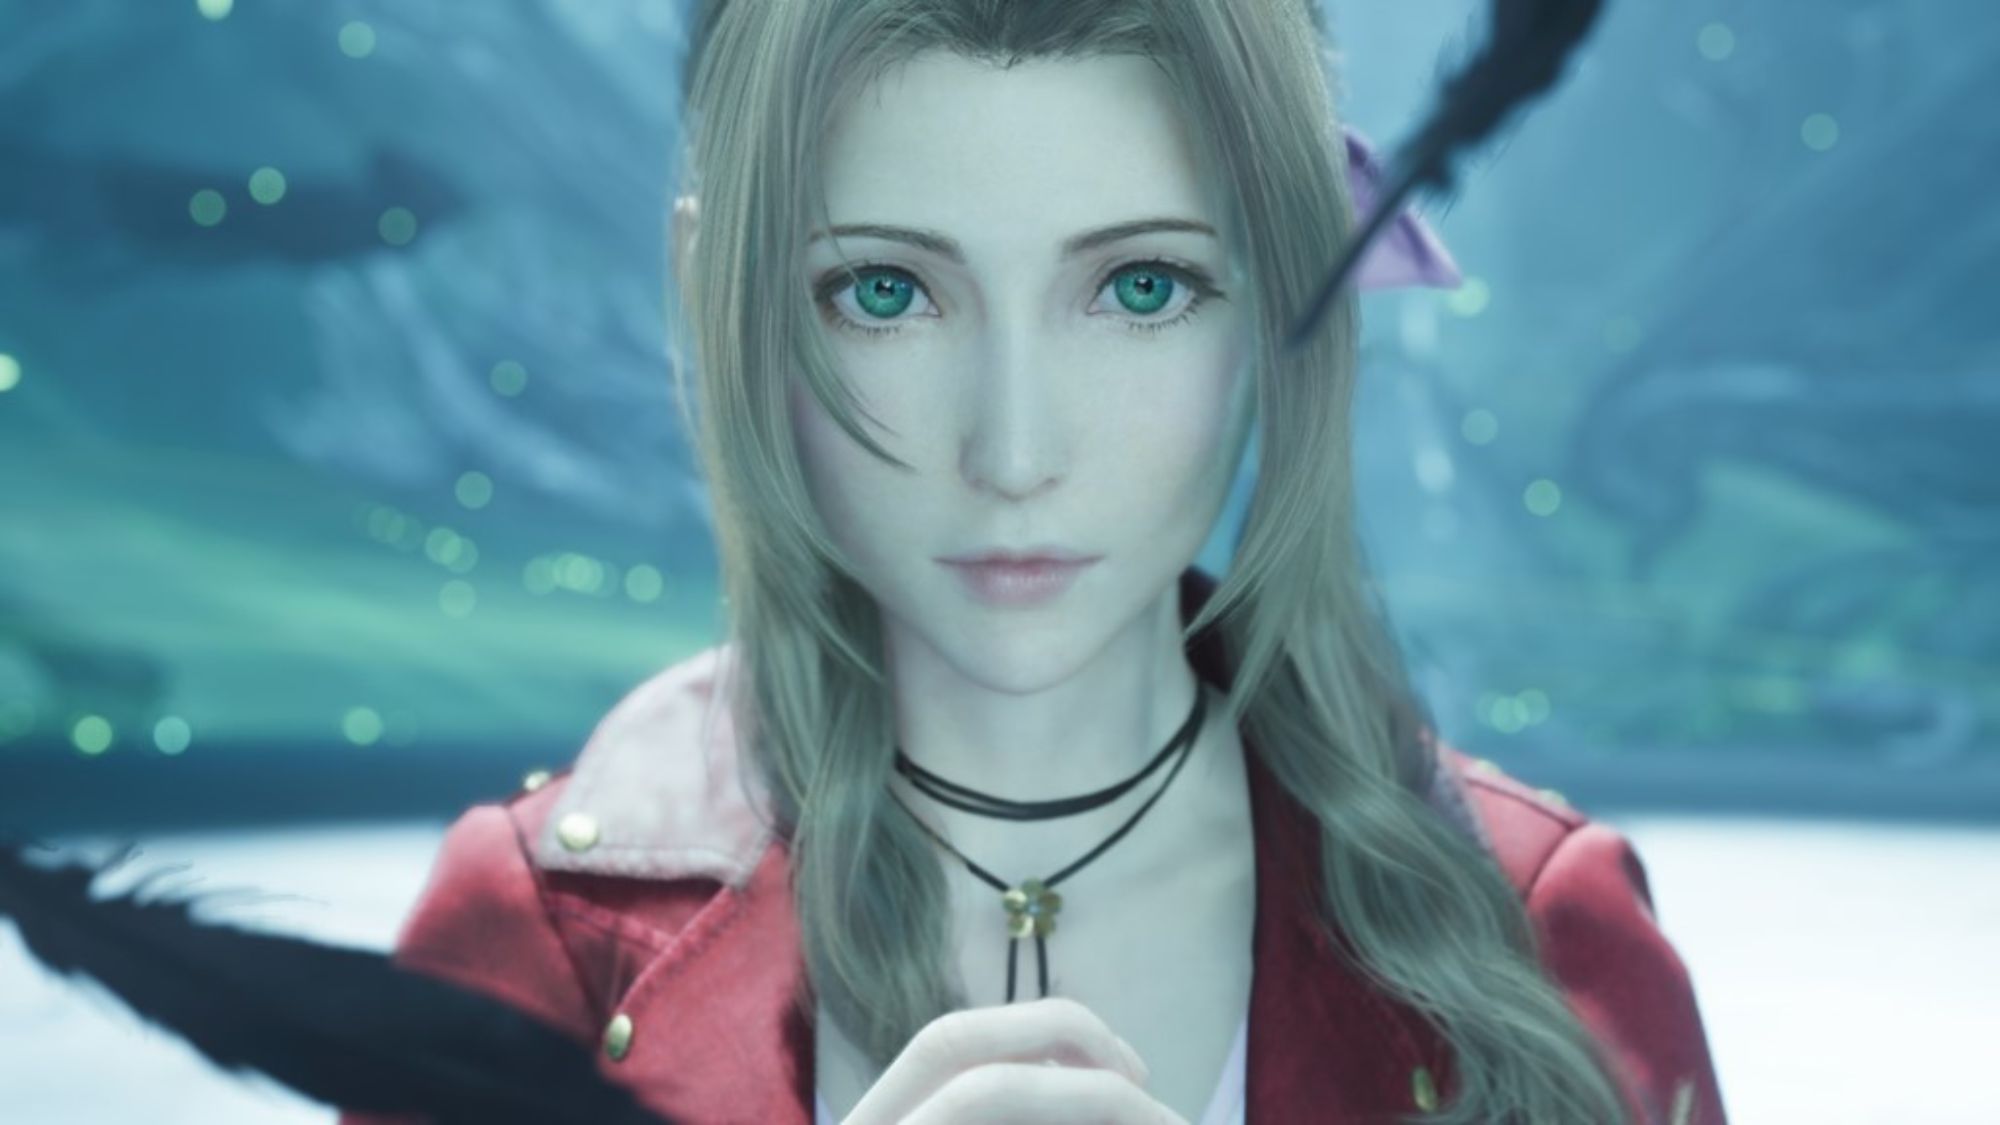 Final Fantasy 7 Rebirth’te yaratıcı yönetmenin ağlama isteği uyandıran bir sahne var